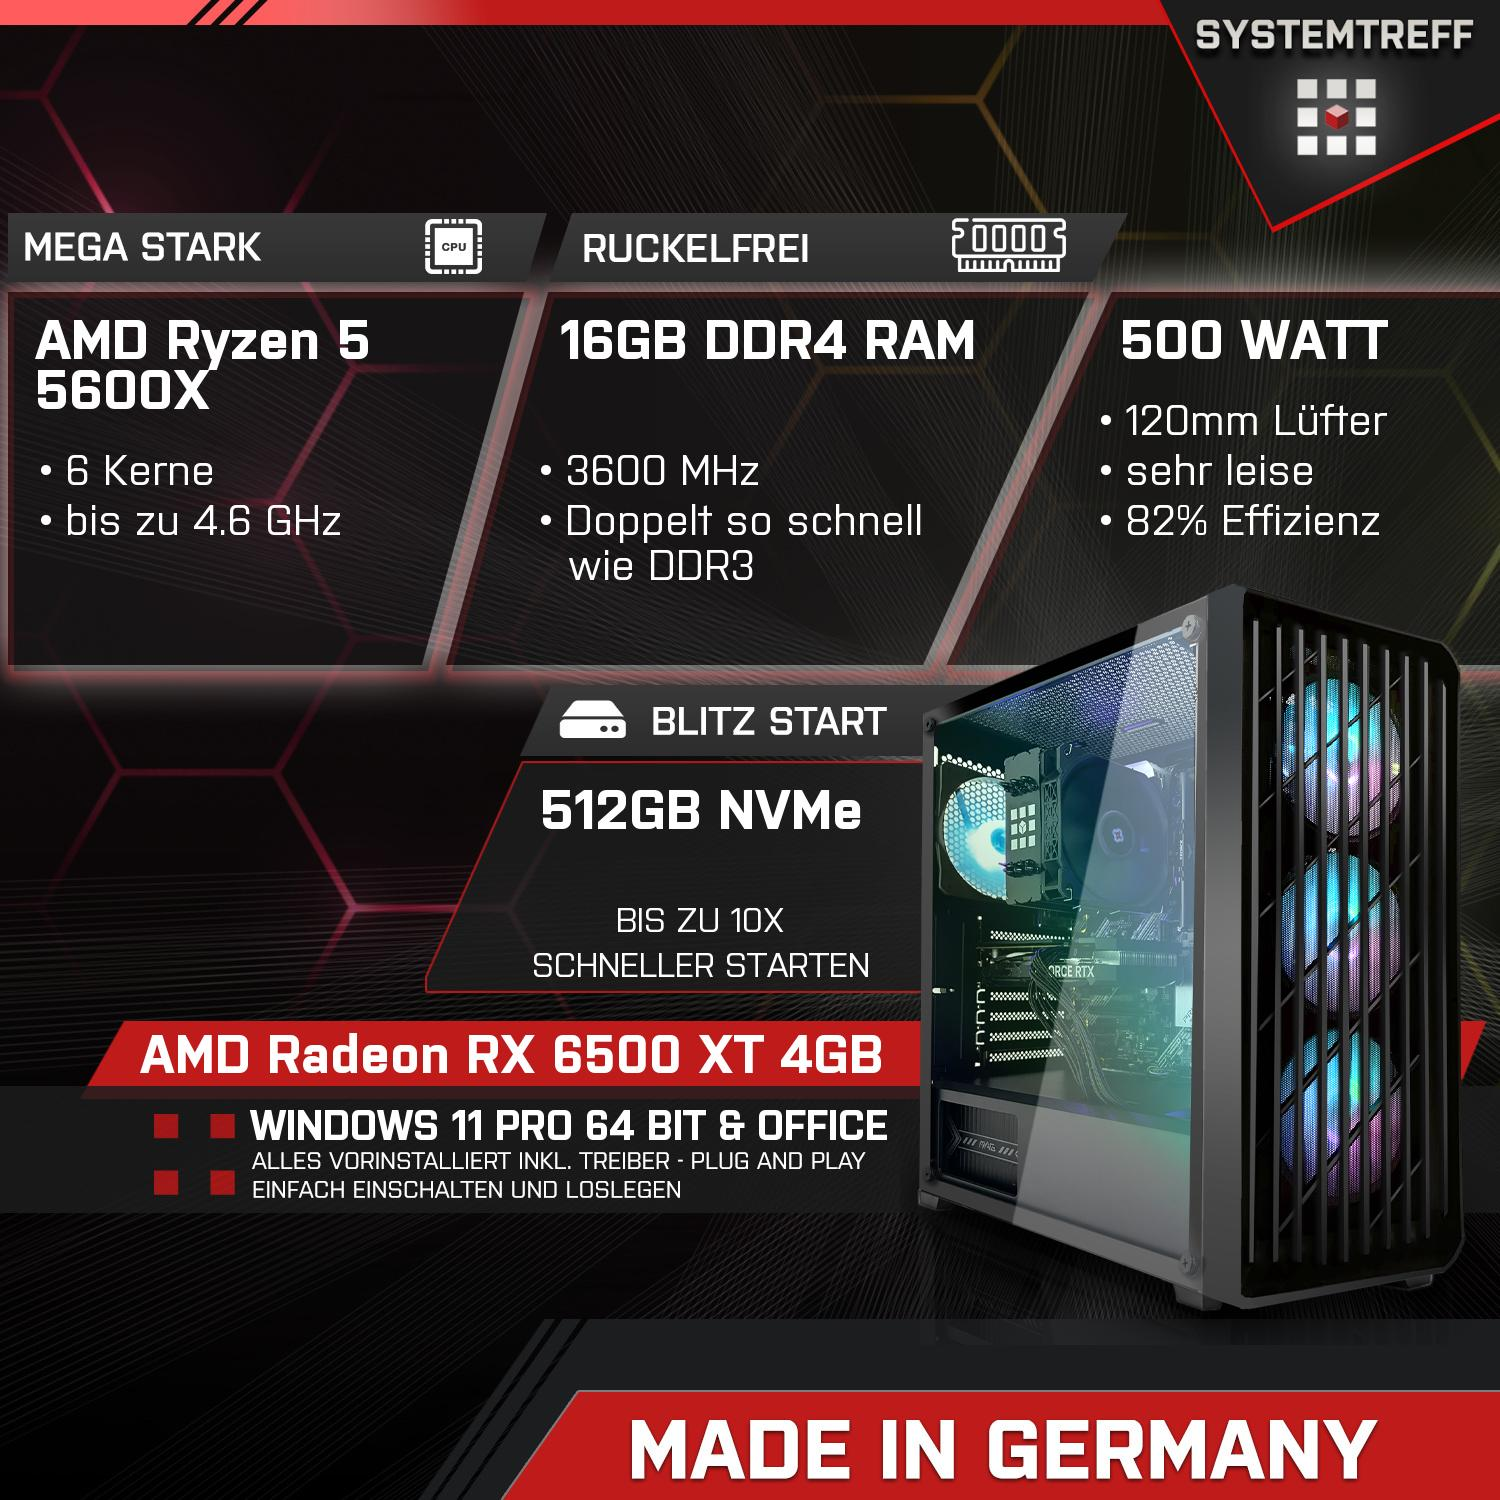 SYSTEMTREFF Gaming Komplett AMD Prozessor, mit 5 RX 5600X GB Ryzen GB Radeon 6500 XT 4 4GB, GB mSSD, 512 PC RAM, 16 Komplett 5600X, AMD